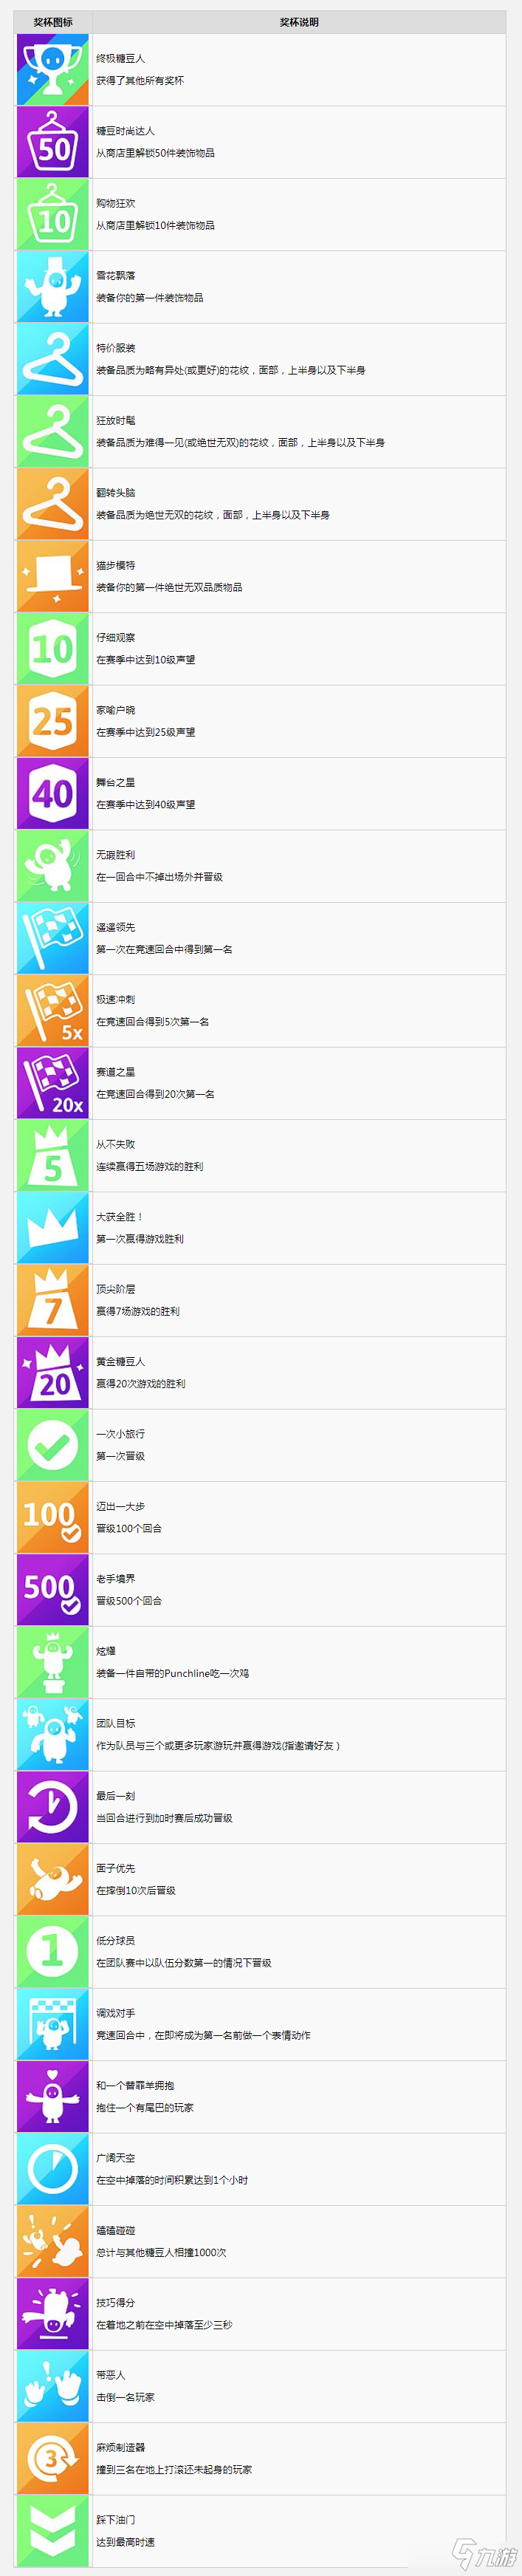 《糖豆人终极淘汰赛》中文奖杯列表有哪些 中文奖杯列表一览